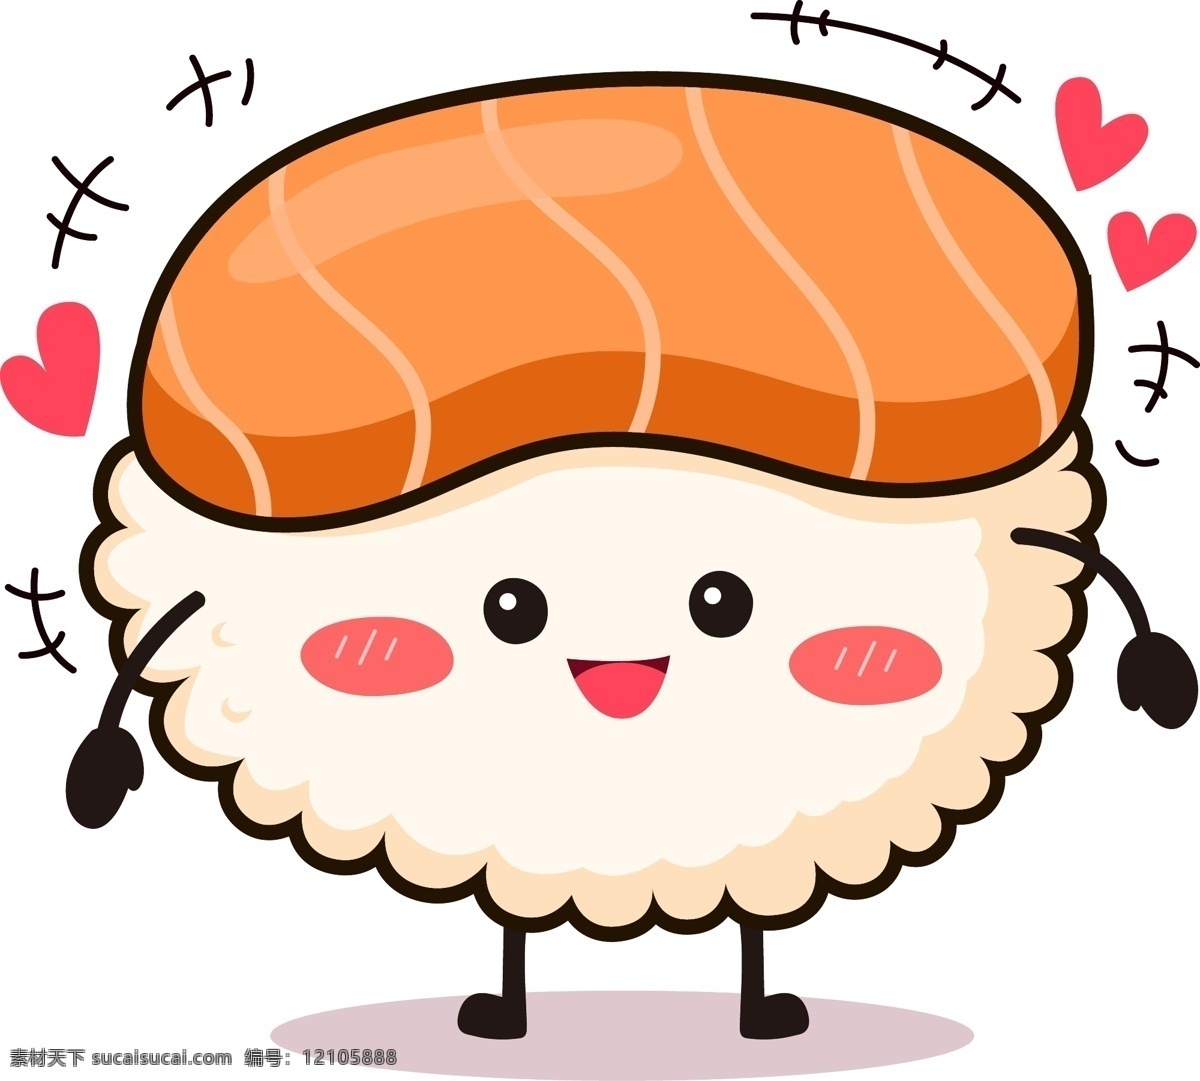 寿司 食物 表情 卡通 可爱 商用 元素 装饰 开心 日式